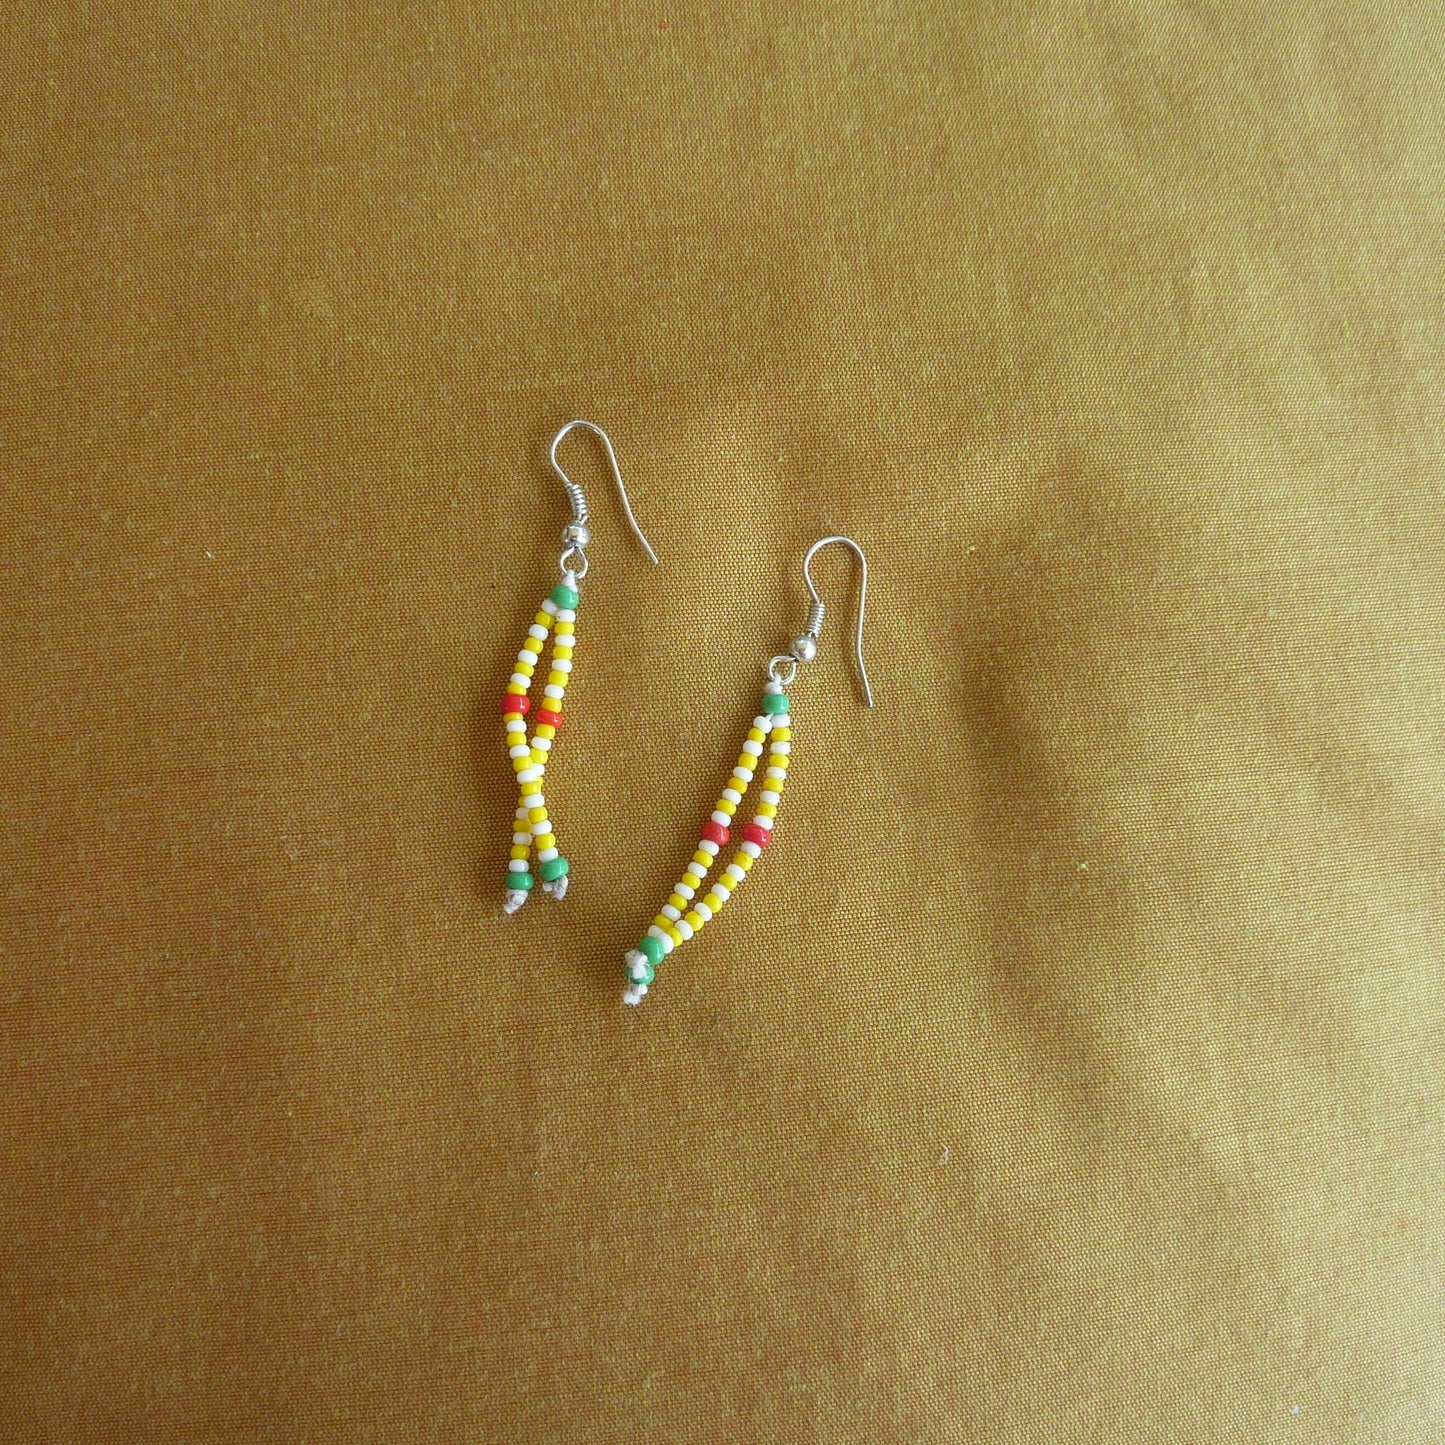 Petites boucles d'oreilles indiennes fines et légères en perles colorées